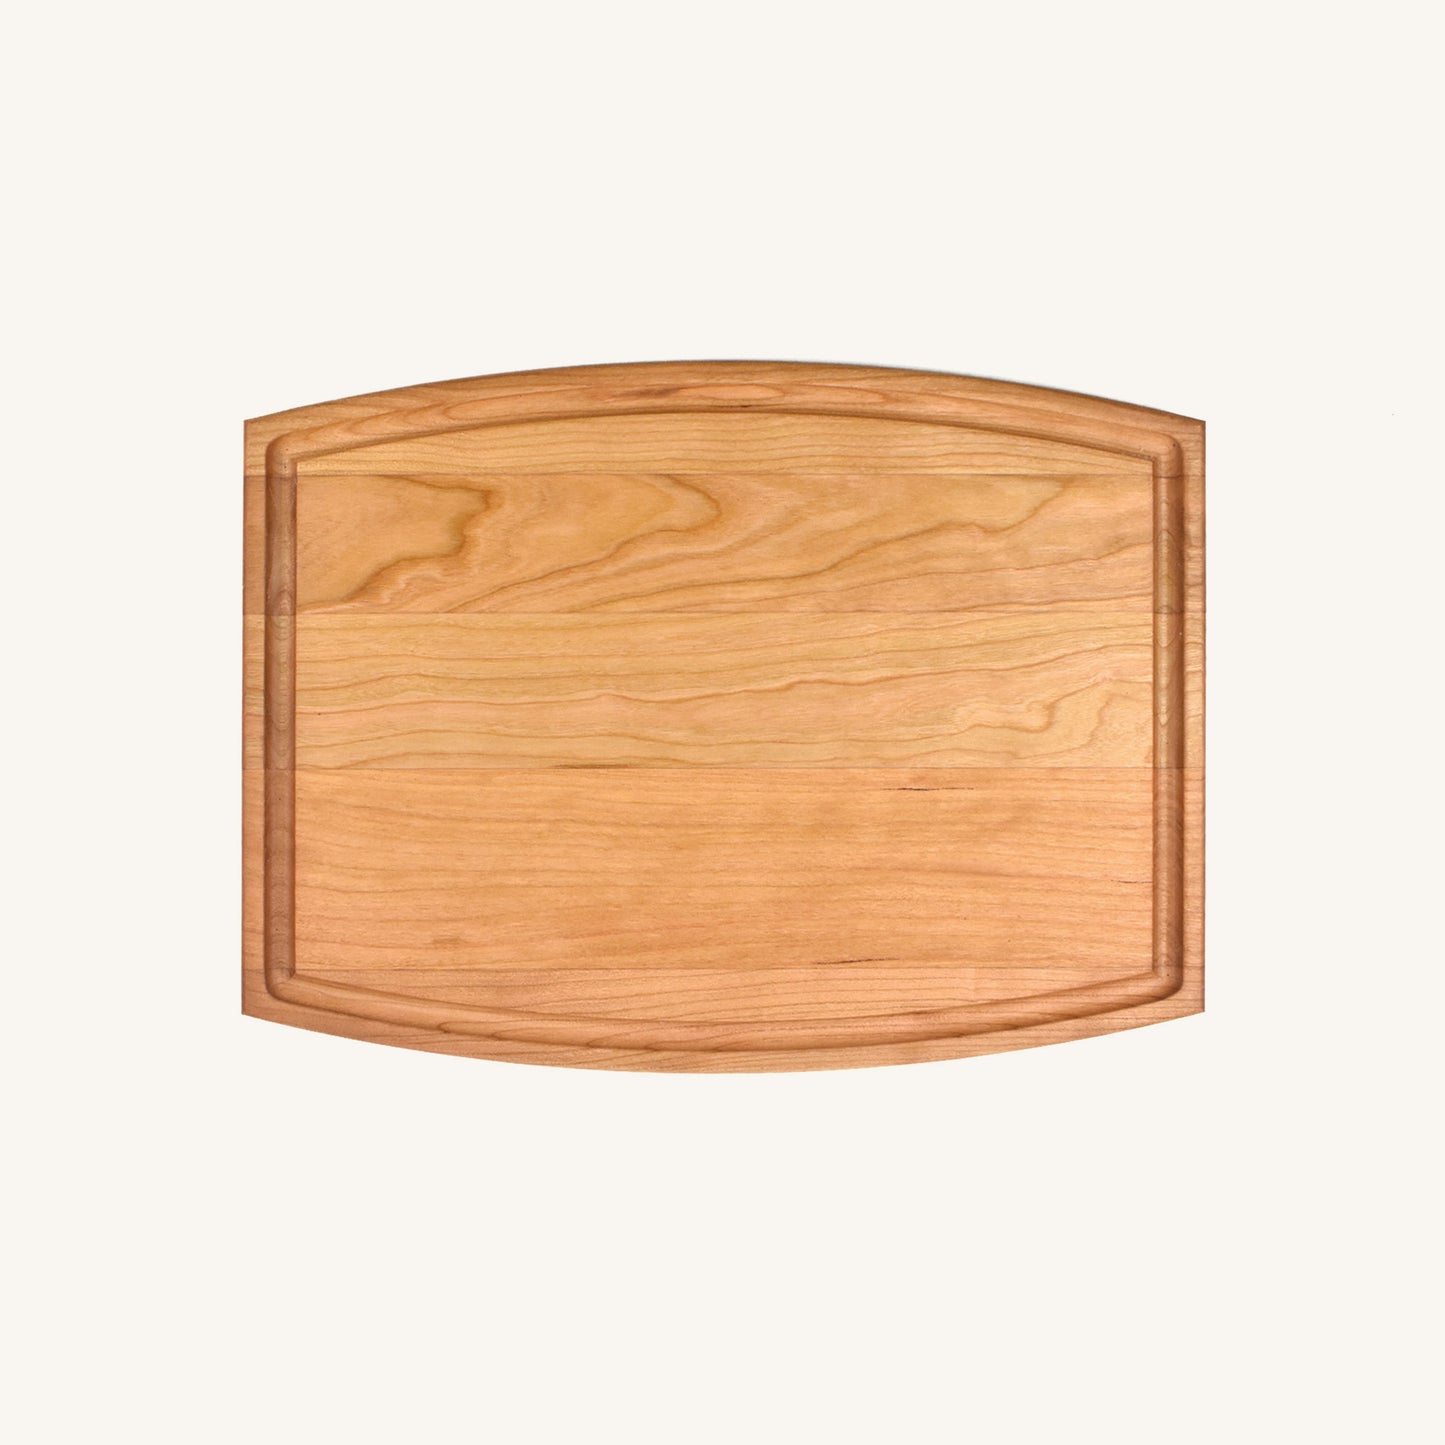 Planche à découper en bois arquée avec rainure à jus